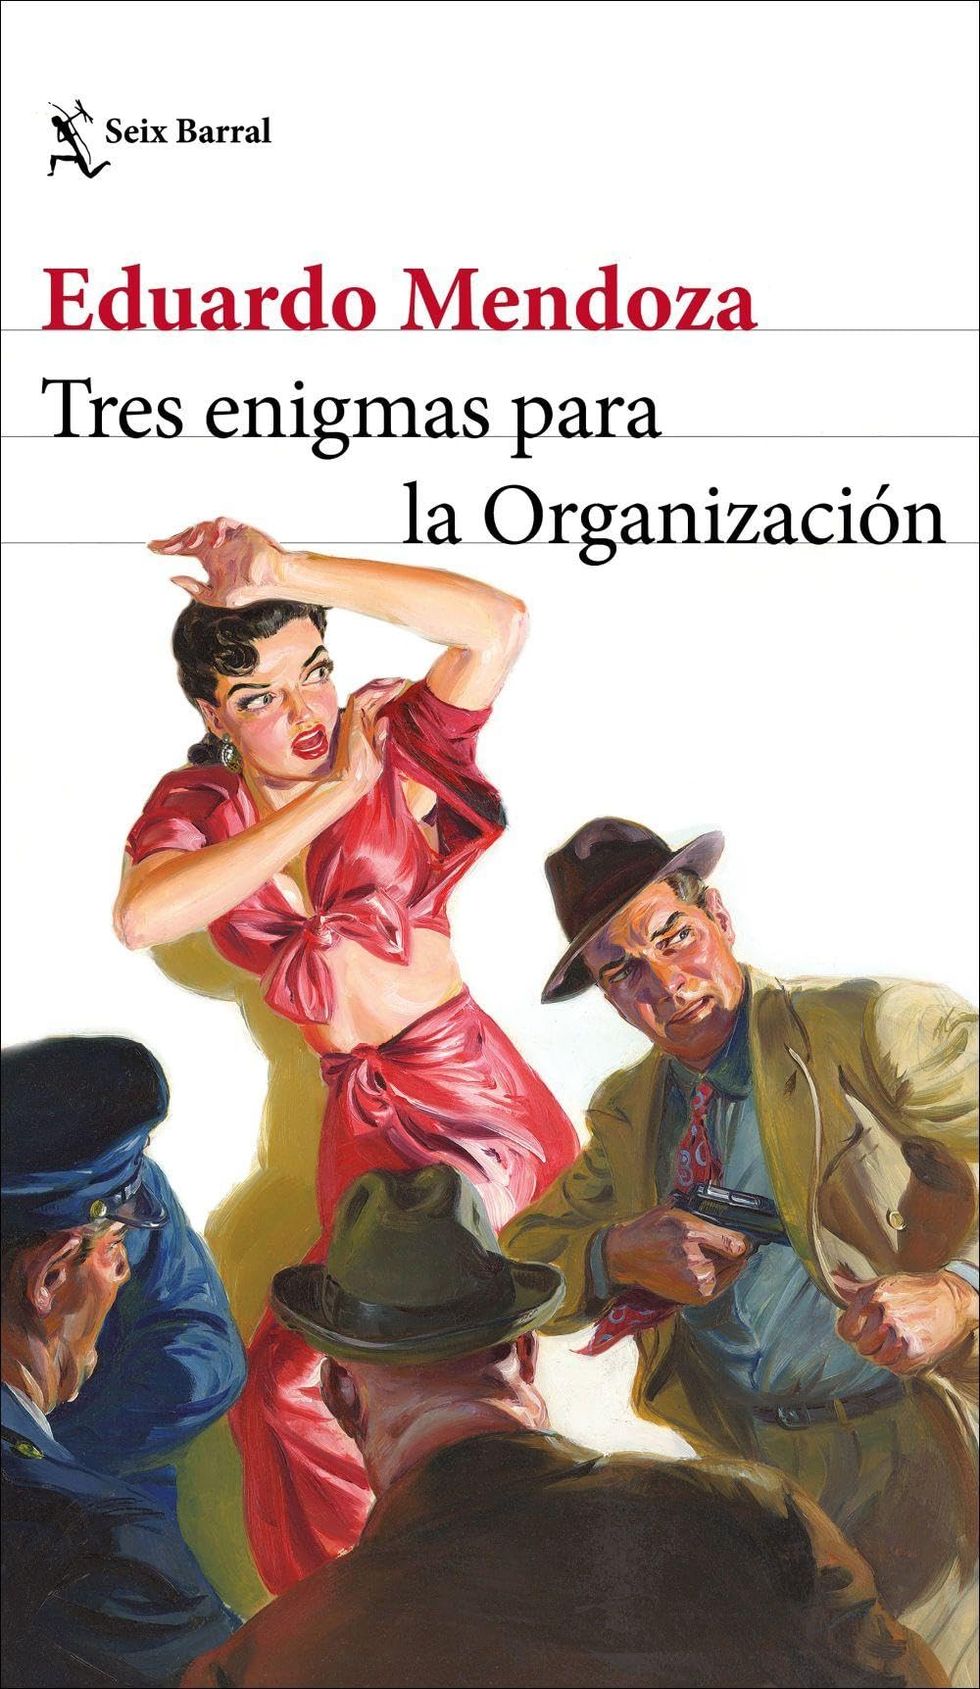 'Tres enigmas para la Organización' de Eduardo Mendoza